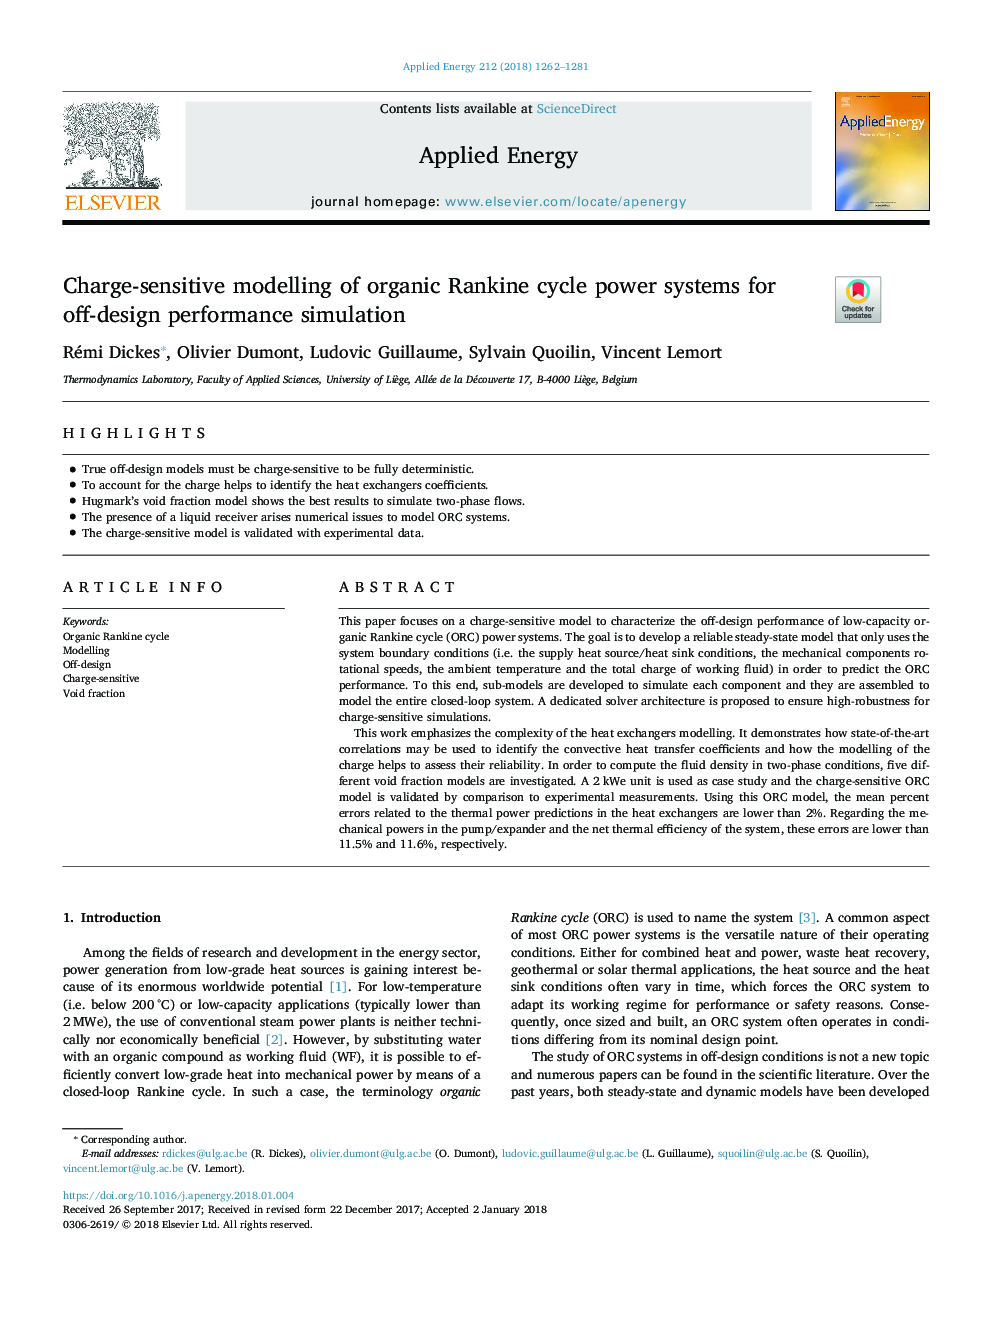 مدل سازی حساس شارژ از سیستم های چرخه انرژی ارگانیک برای شبیه سازی عملکرد غیر طراحی 